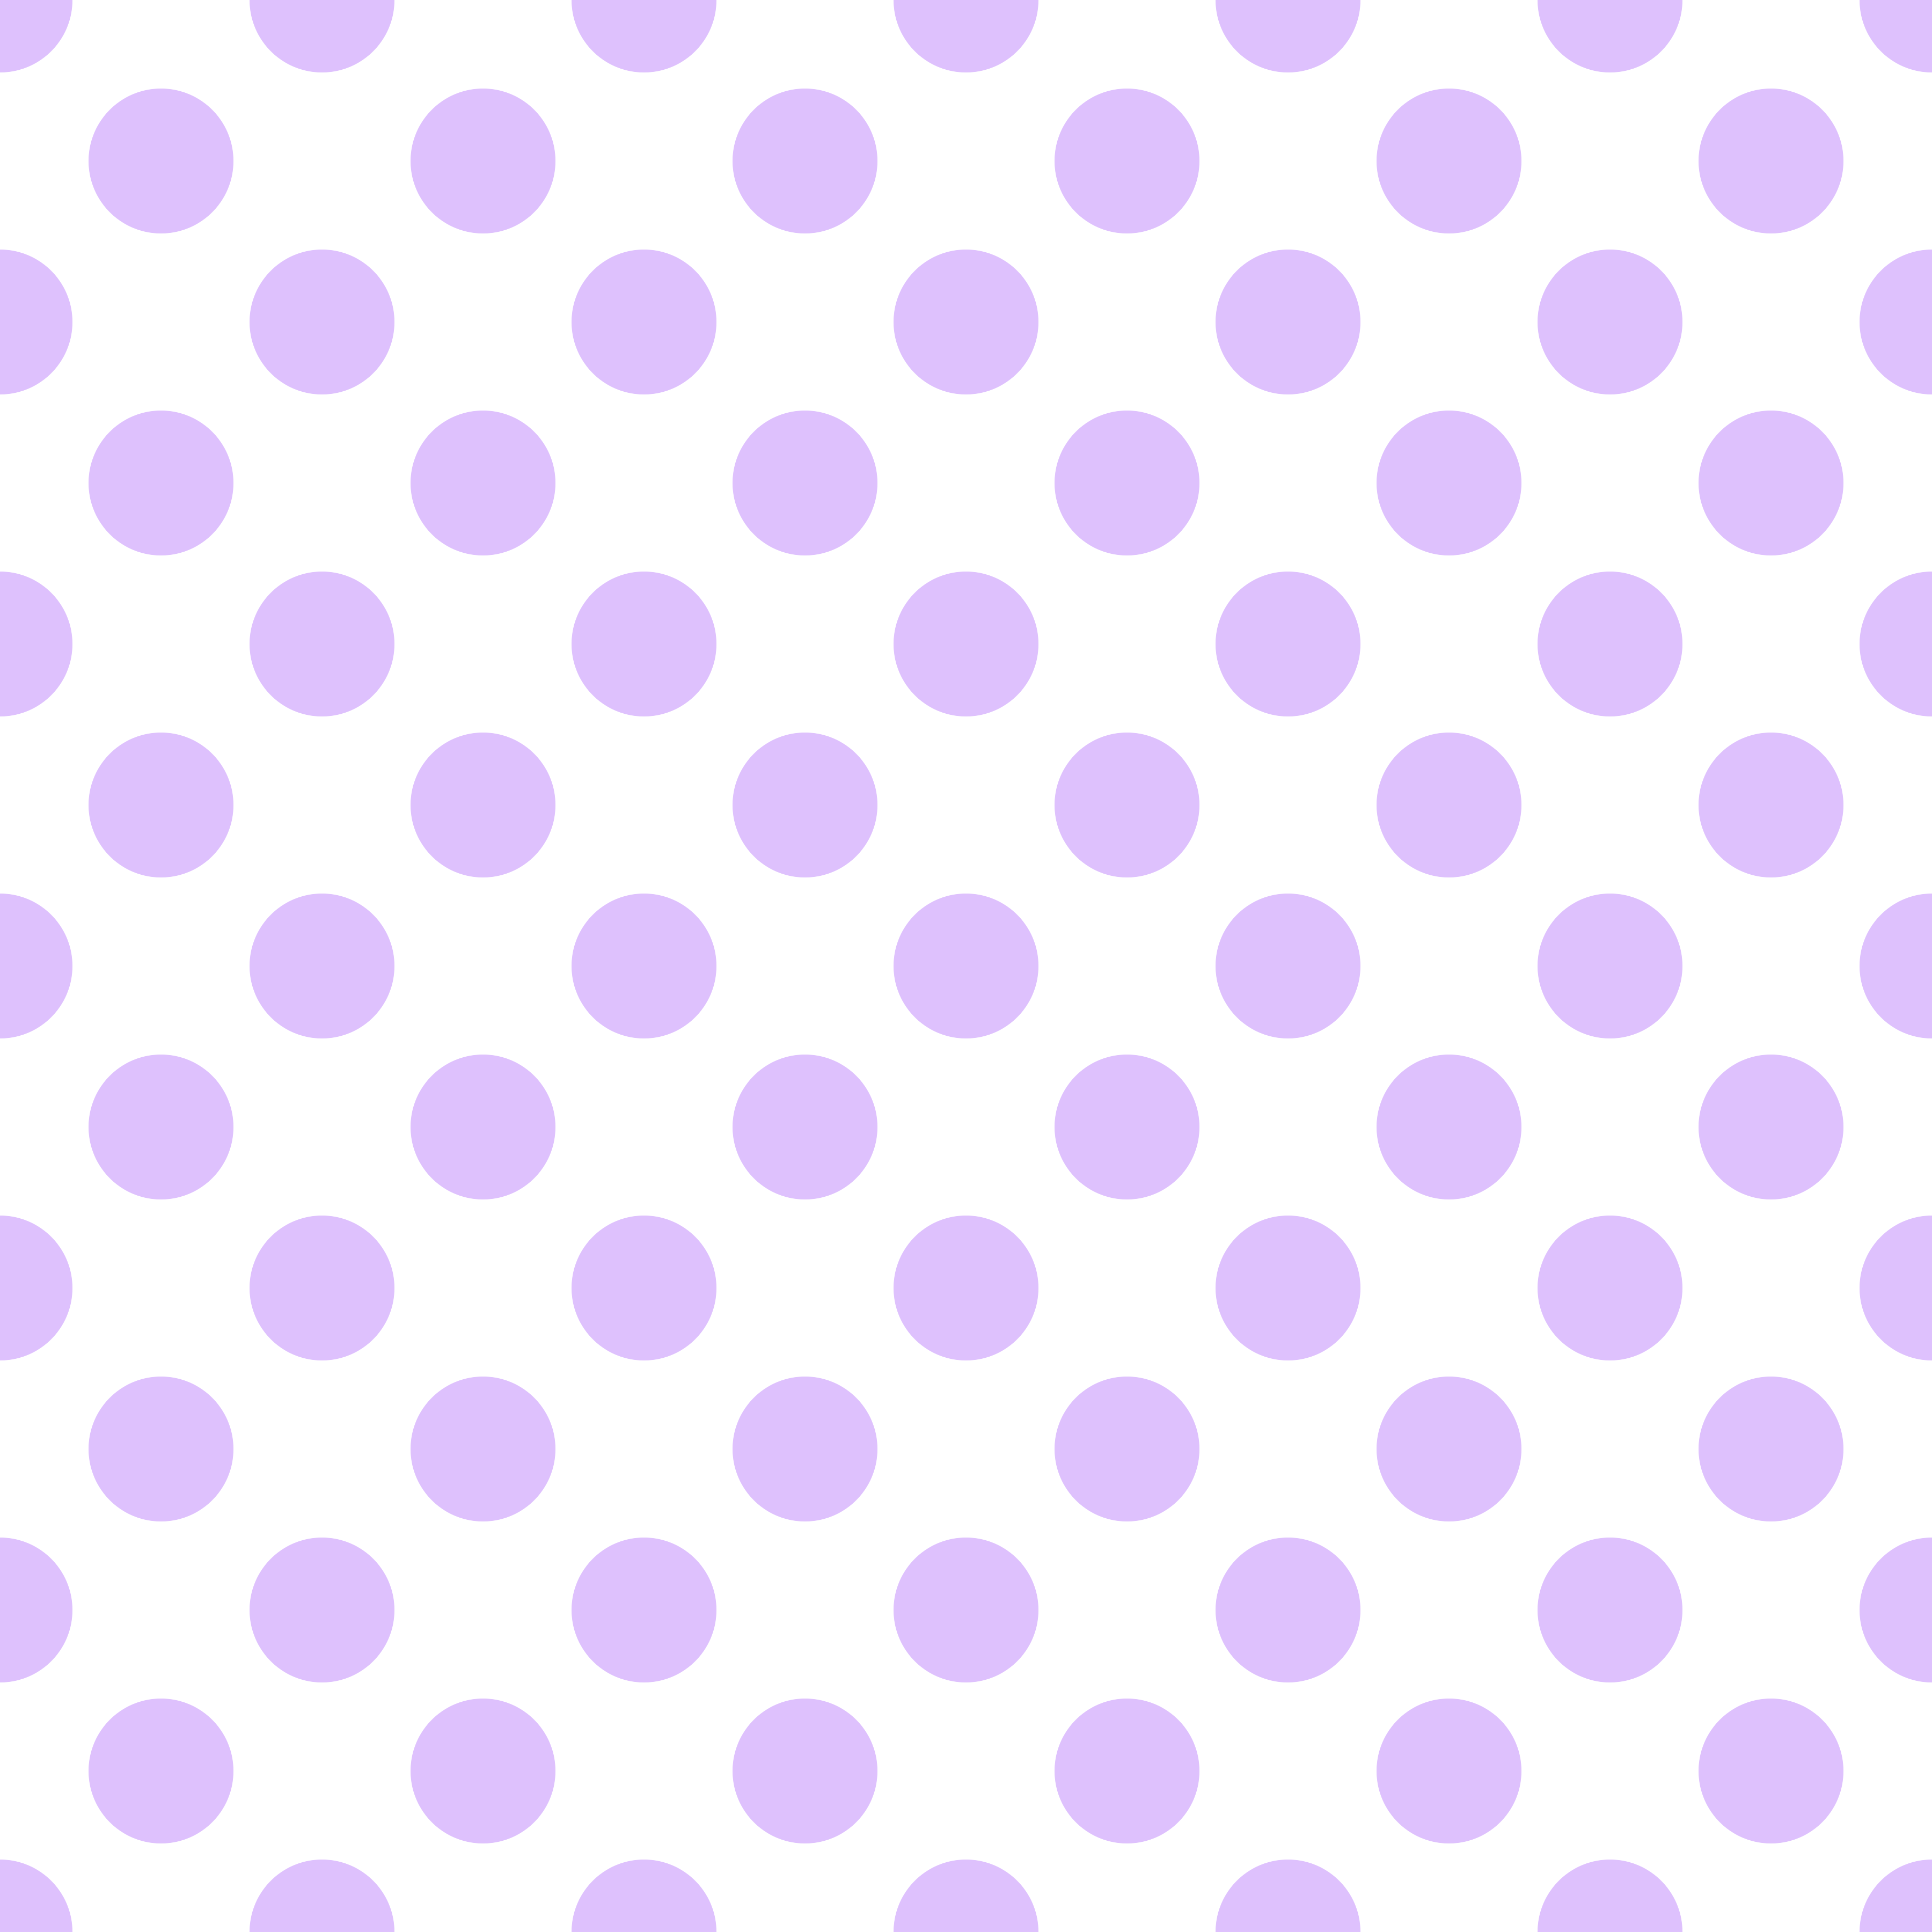 Polka Dot 1 cm Beyaz - Mor Salkım Rengi Puantiye Dekoratif Baskı Kumaş